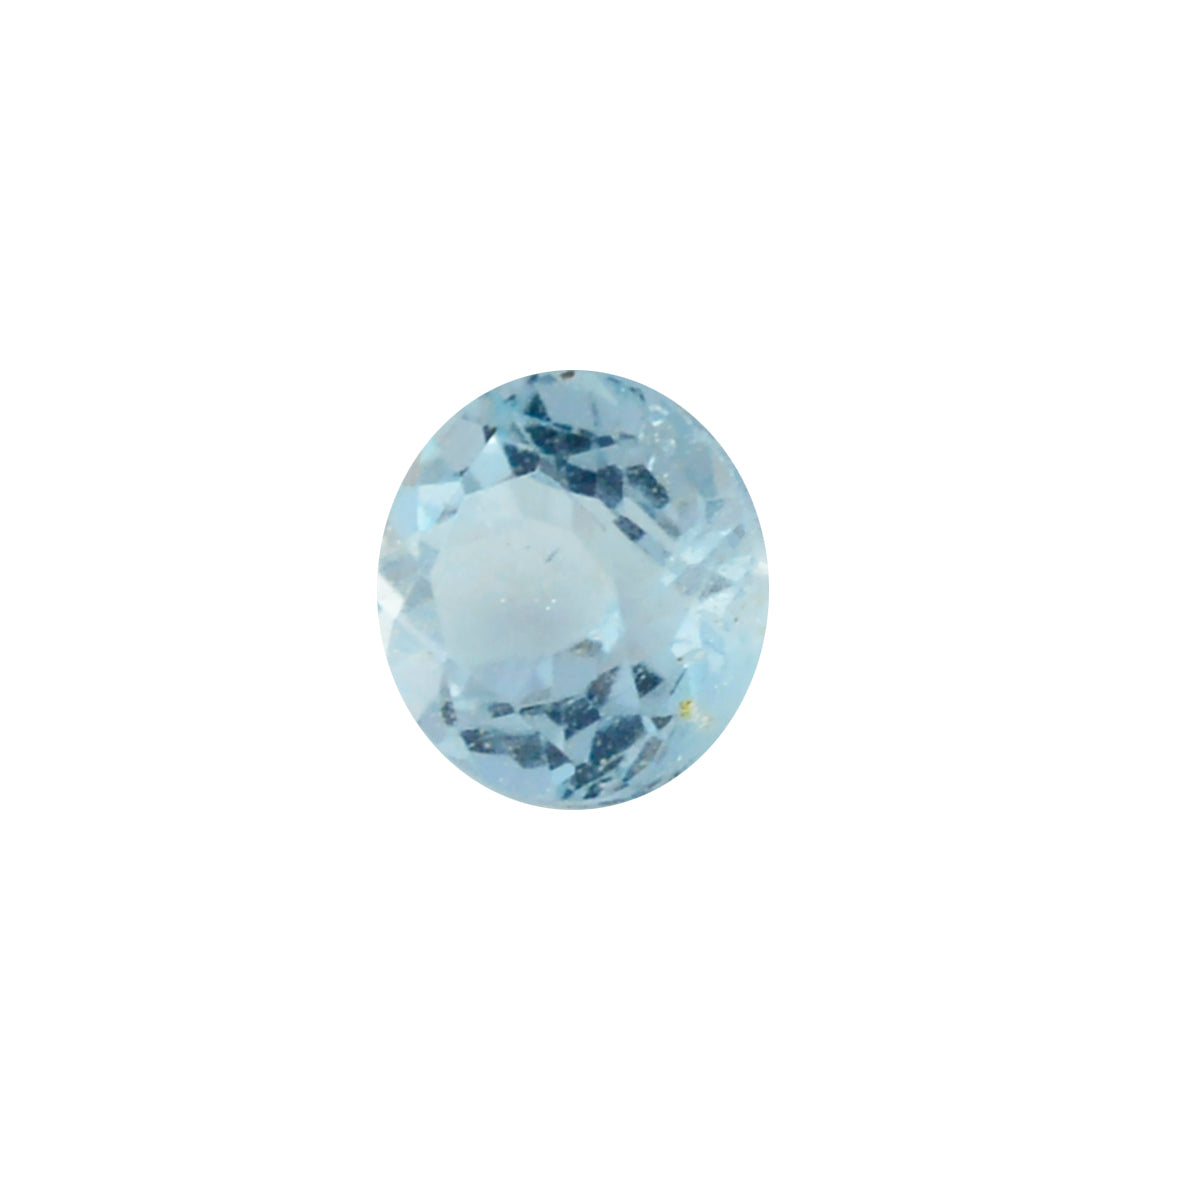 riyogems 1шт натуральный голубой топаз ограненный 7x7 мм круглая форма красивый качественный драгоценный камень